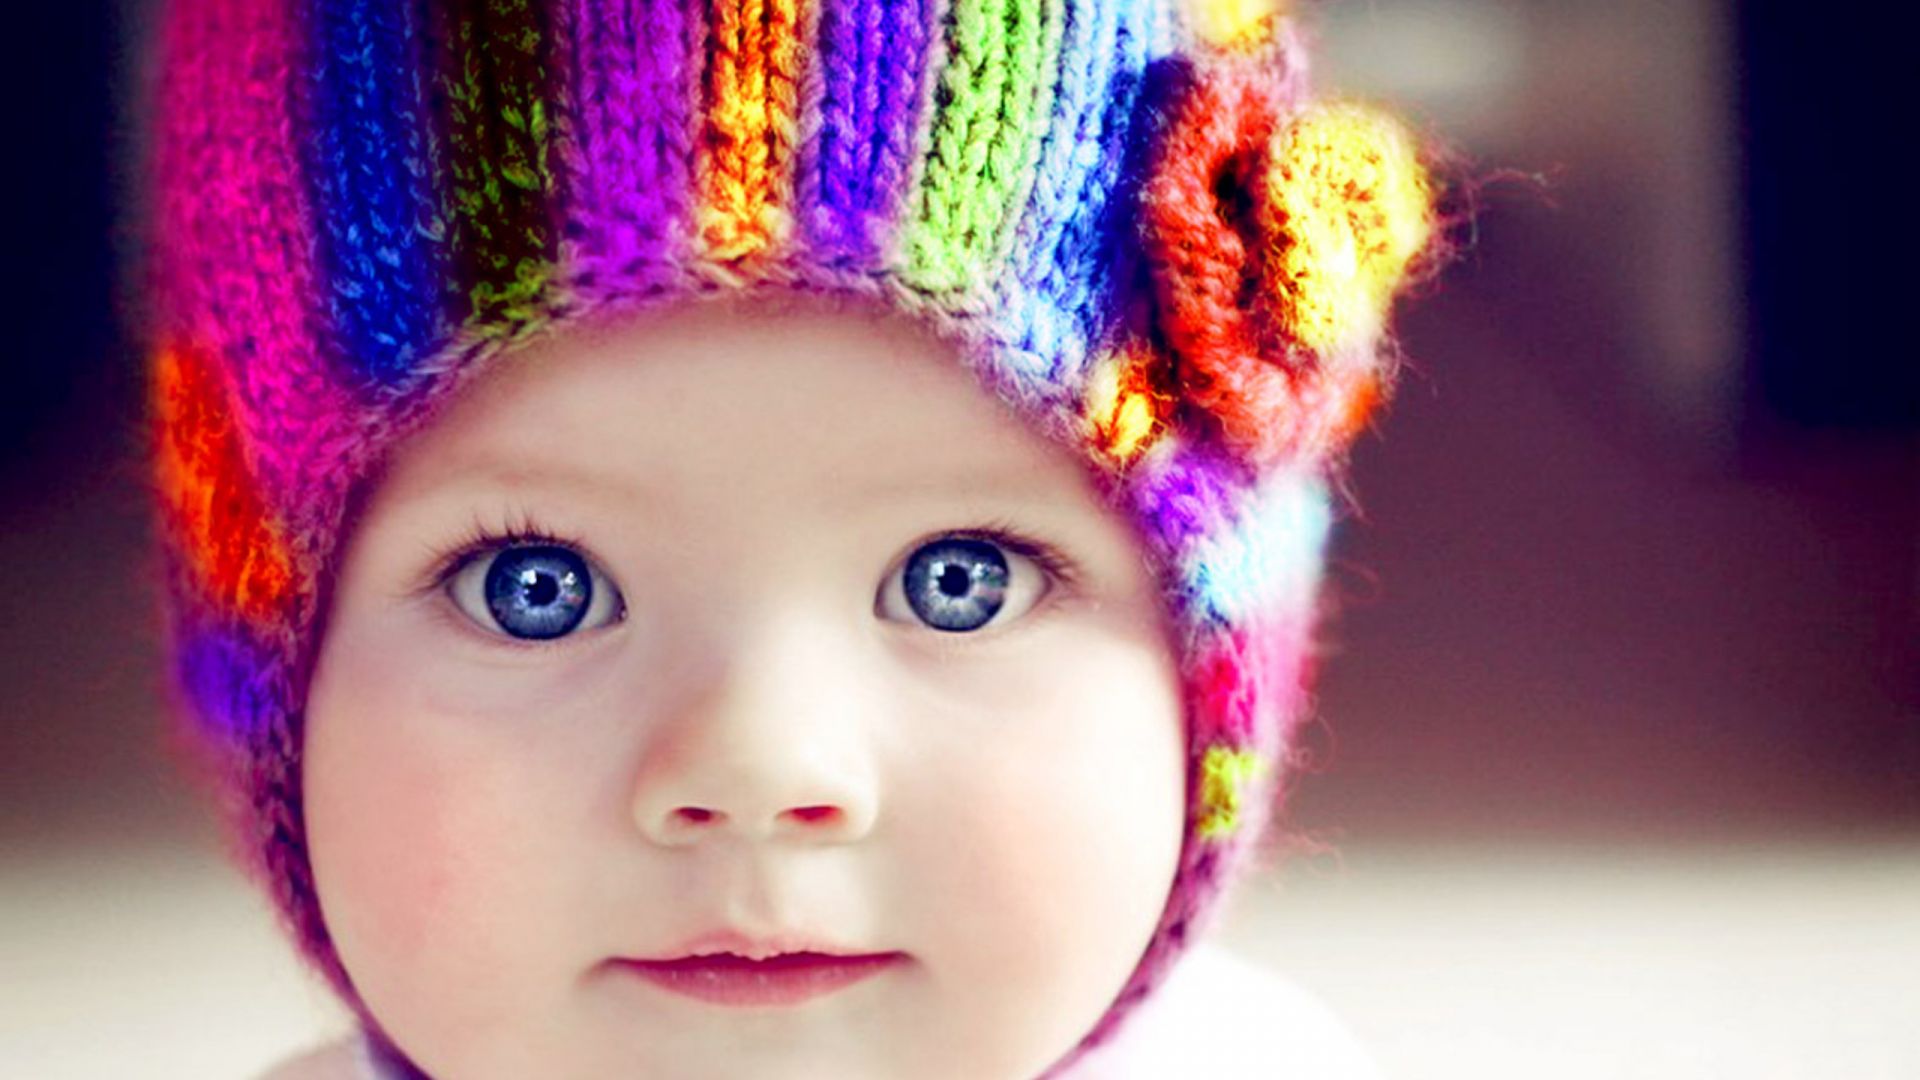 Wallpaper Blue eye Cute baby